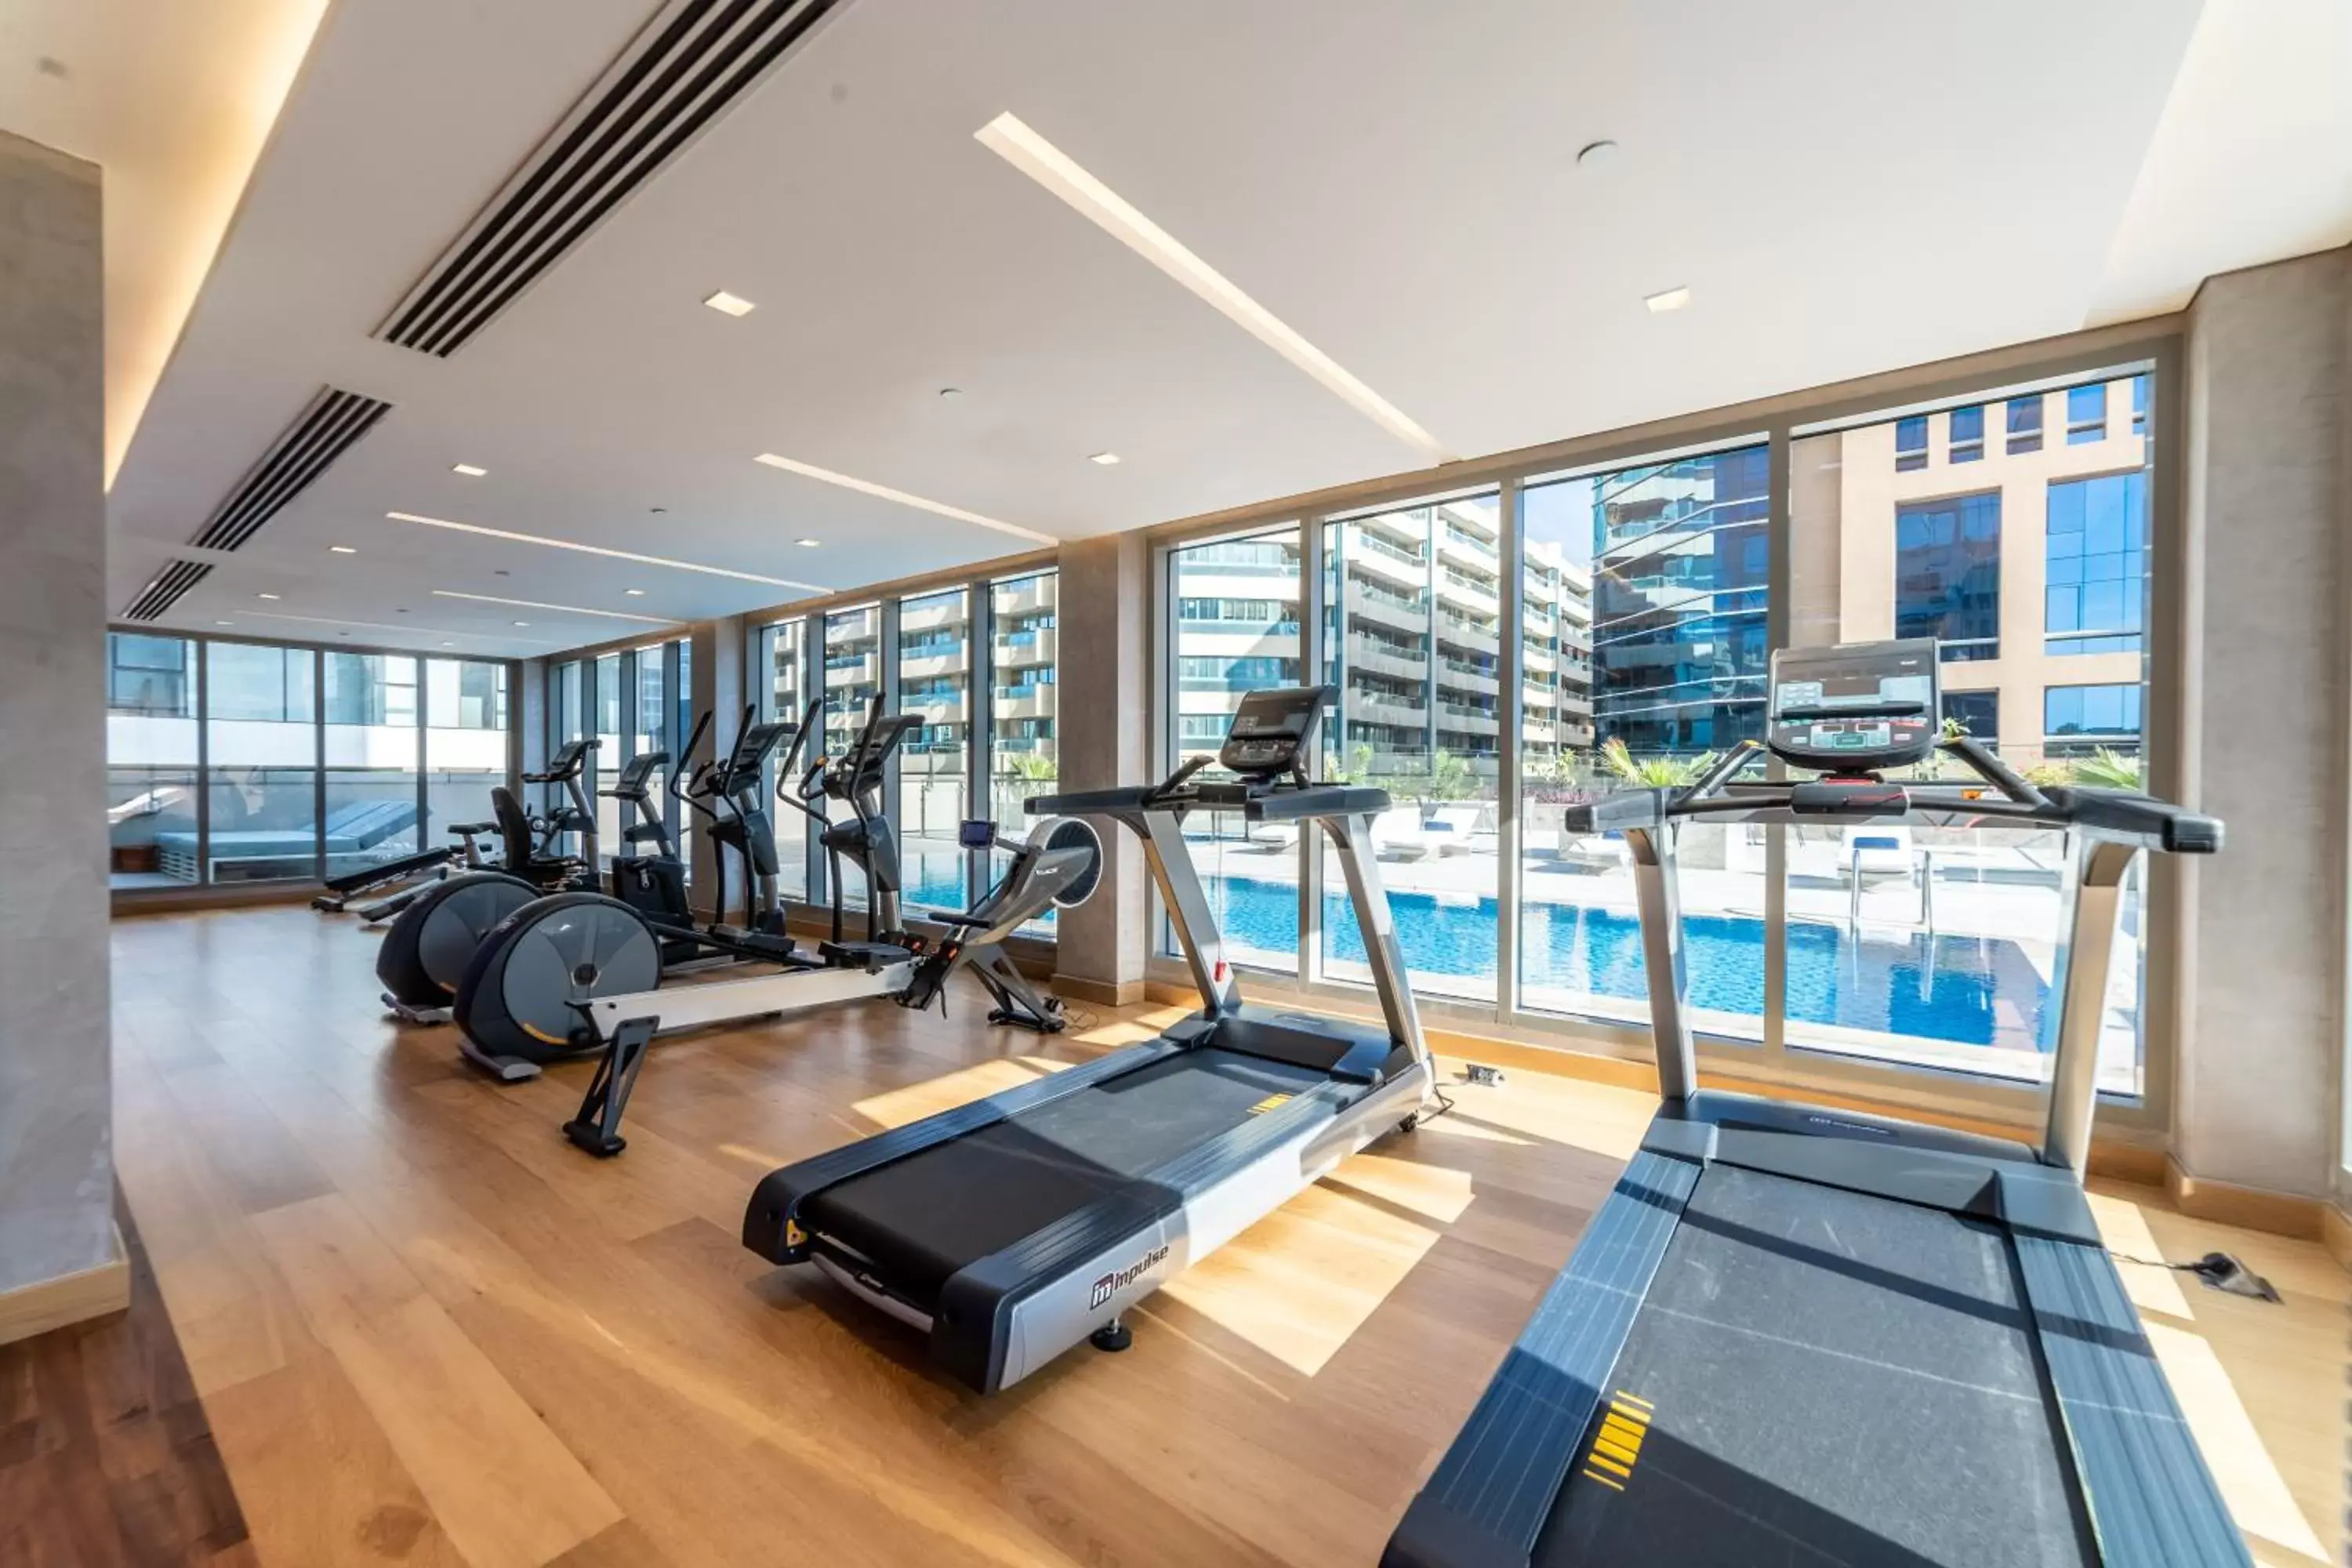 Fitness centre/facilities, Fitness Center/Facilities in Suha Mina Rashid Hotel Apartments